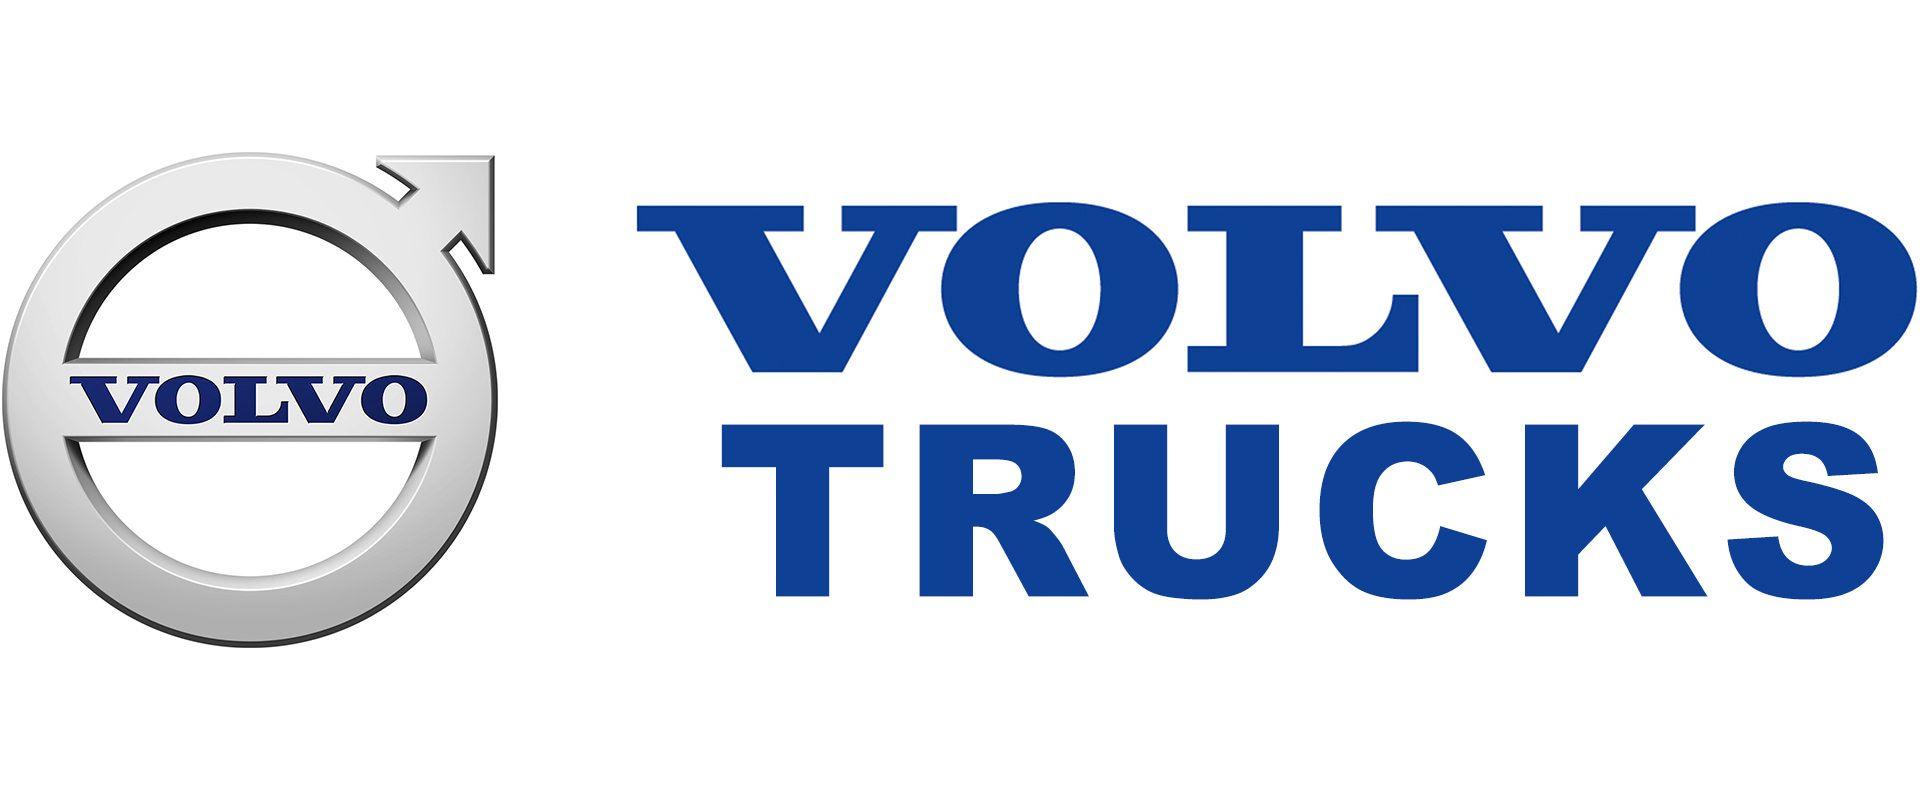 Volvo Truck Logo - Volvo trucks Logos